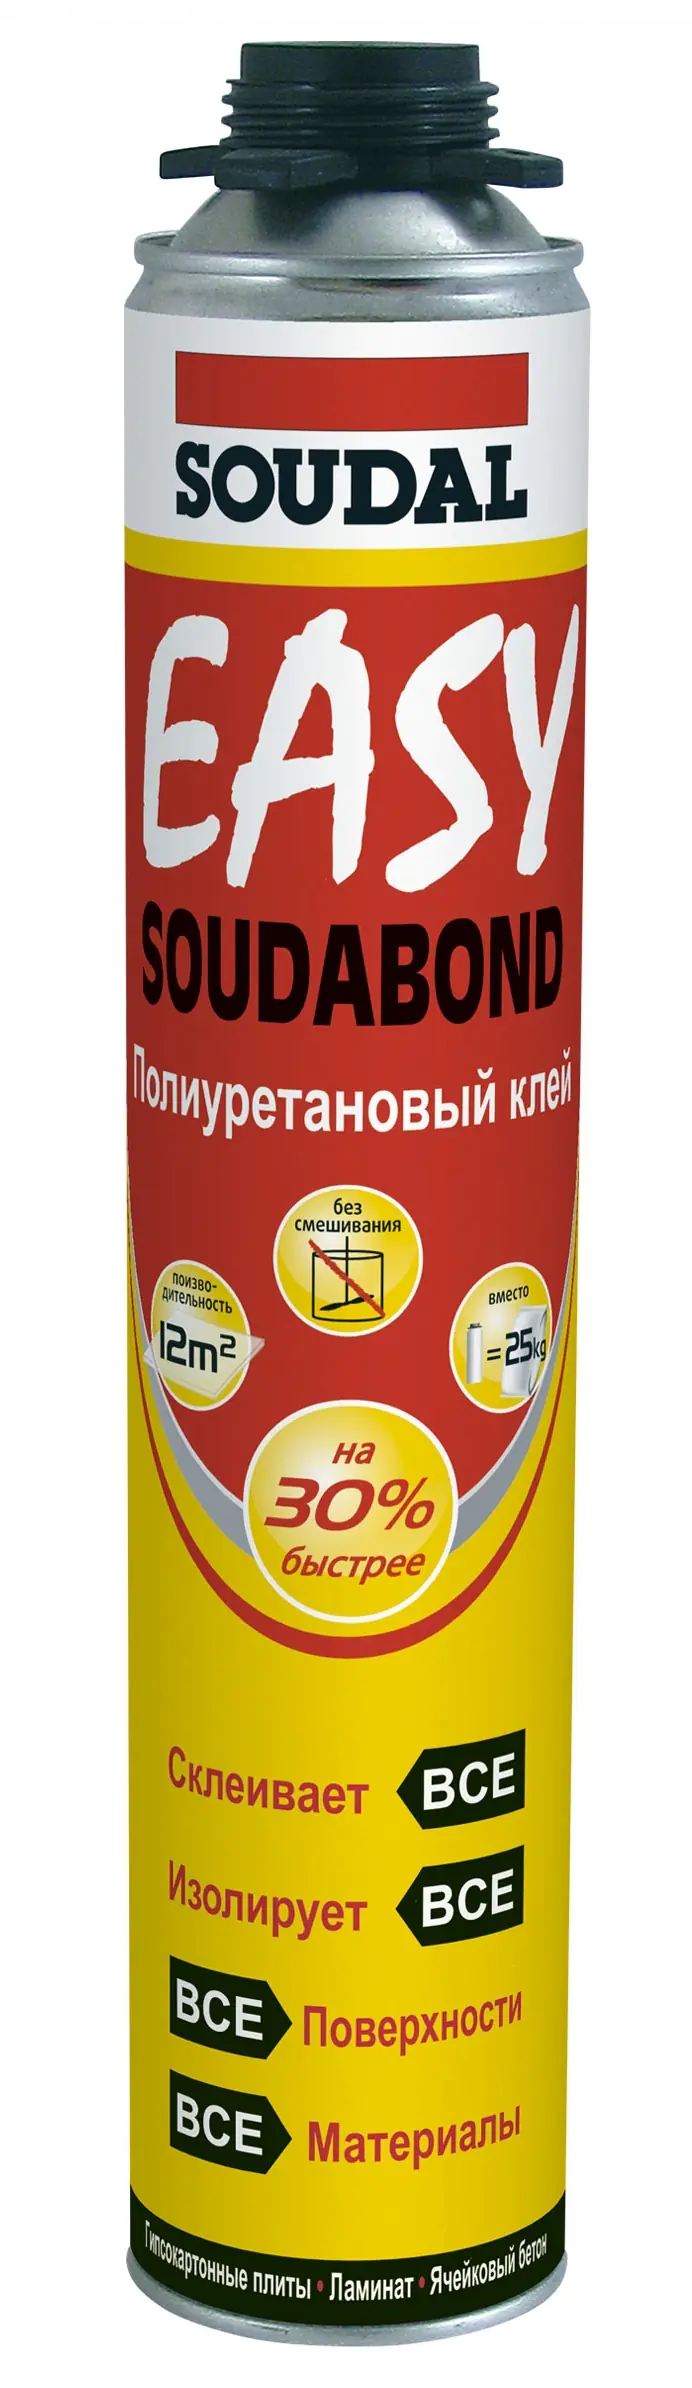 Клей-пена Soudal Soudabond Easy под пистолет 750 мл. Польша.